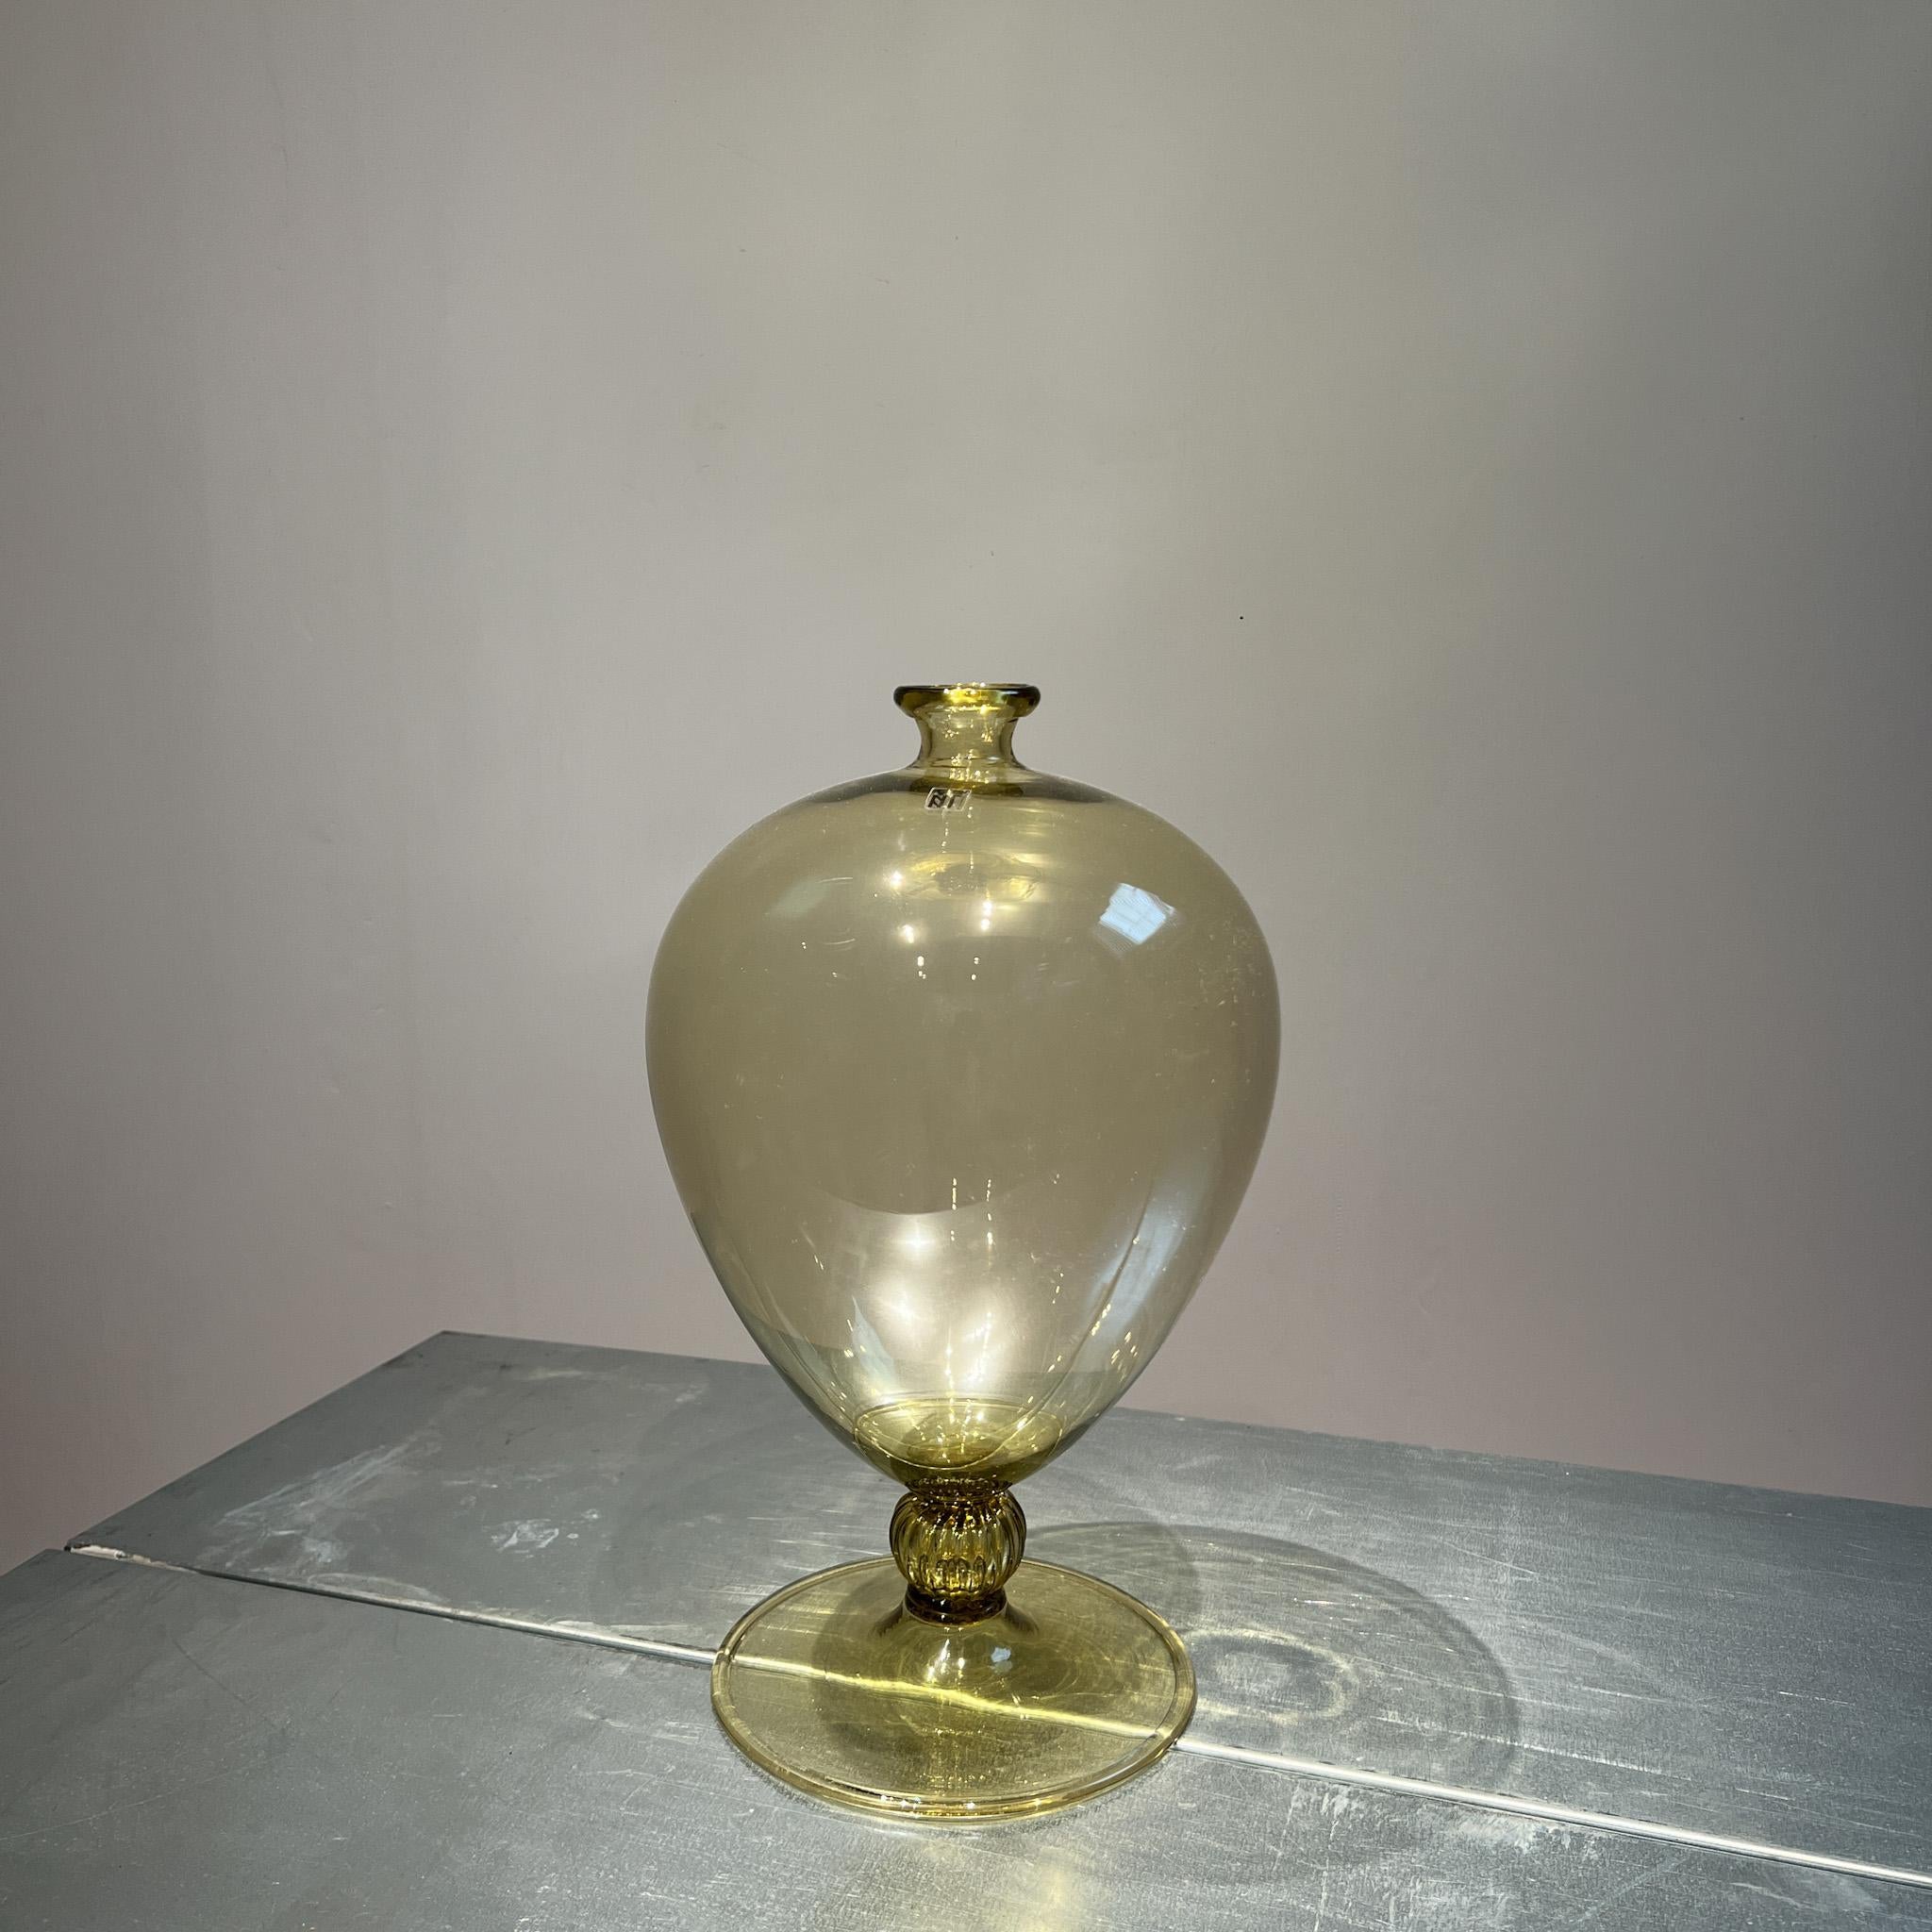 Superbe vase Véronèse, datant des années 1960 ou plus tôt. Signé avec l'étiquette et en dessous. Deux vases identiques disponibles.

Soufflé pour la première fois en 1921, grâce à l'intuition du directeur artistique de Venini 1921-1925 : le peintre